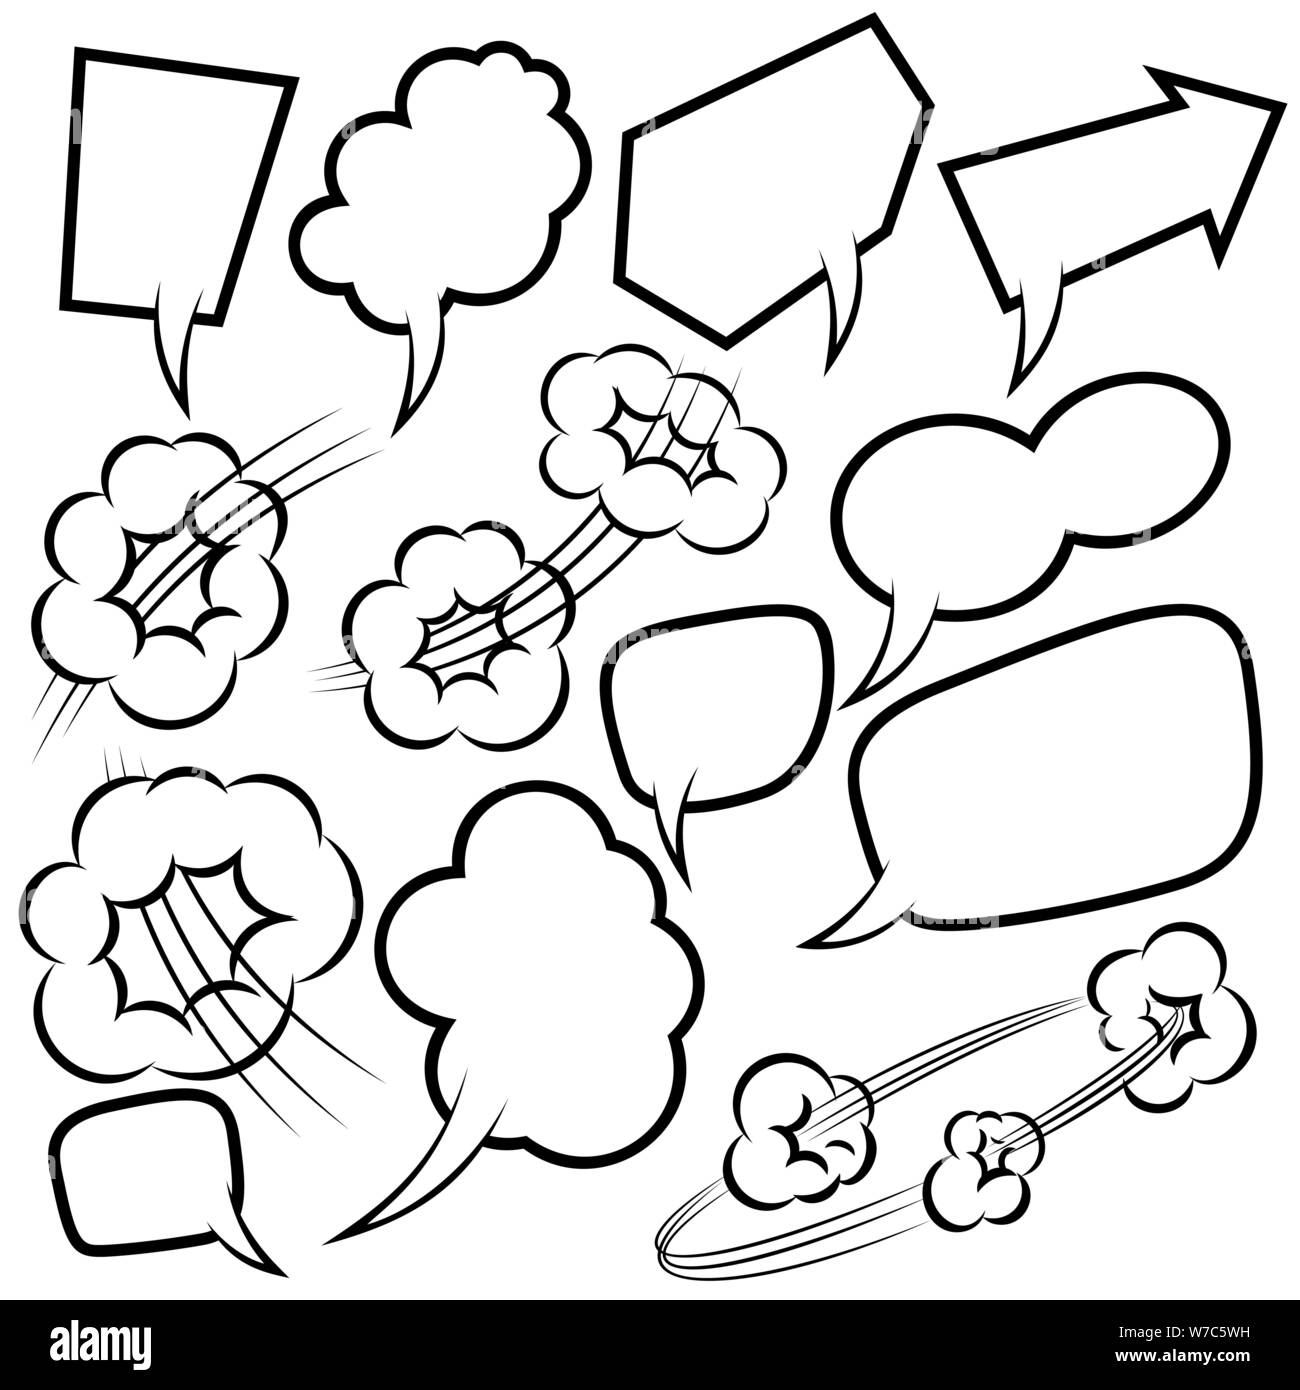 Satz von leeren comic Sprechblasen. Design Element für Poster, Karten, Banner, Flyer. Vector Illustration Stock Vektor